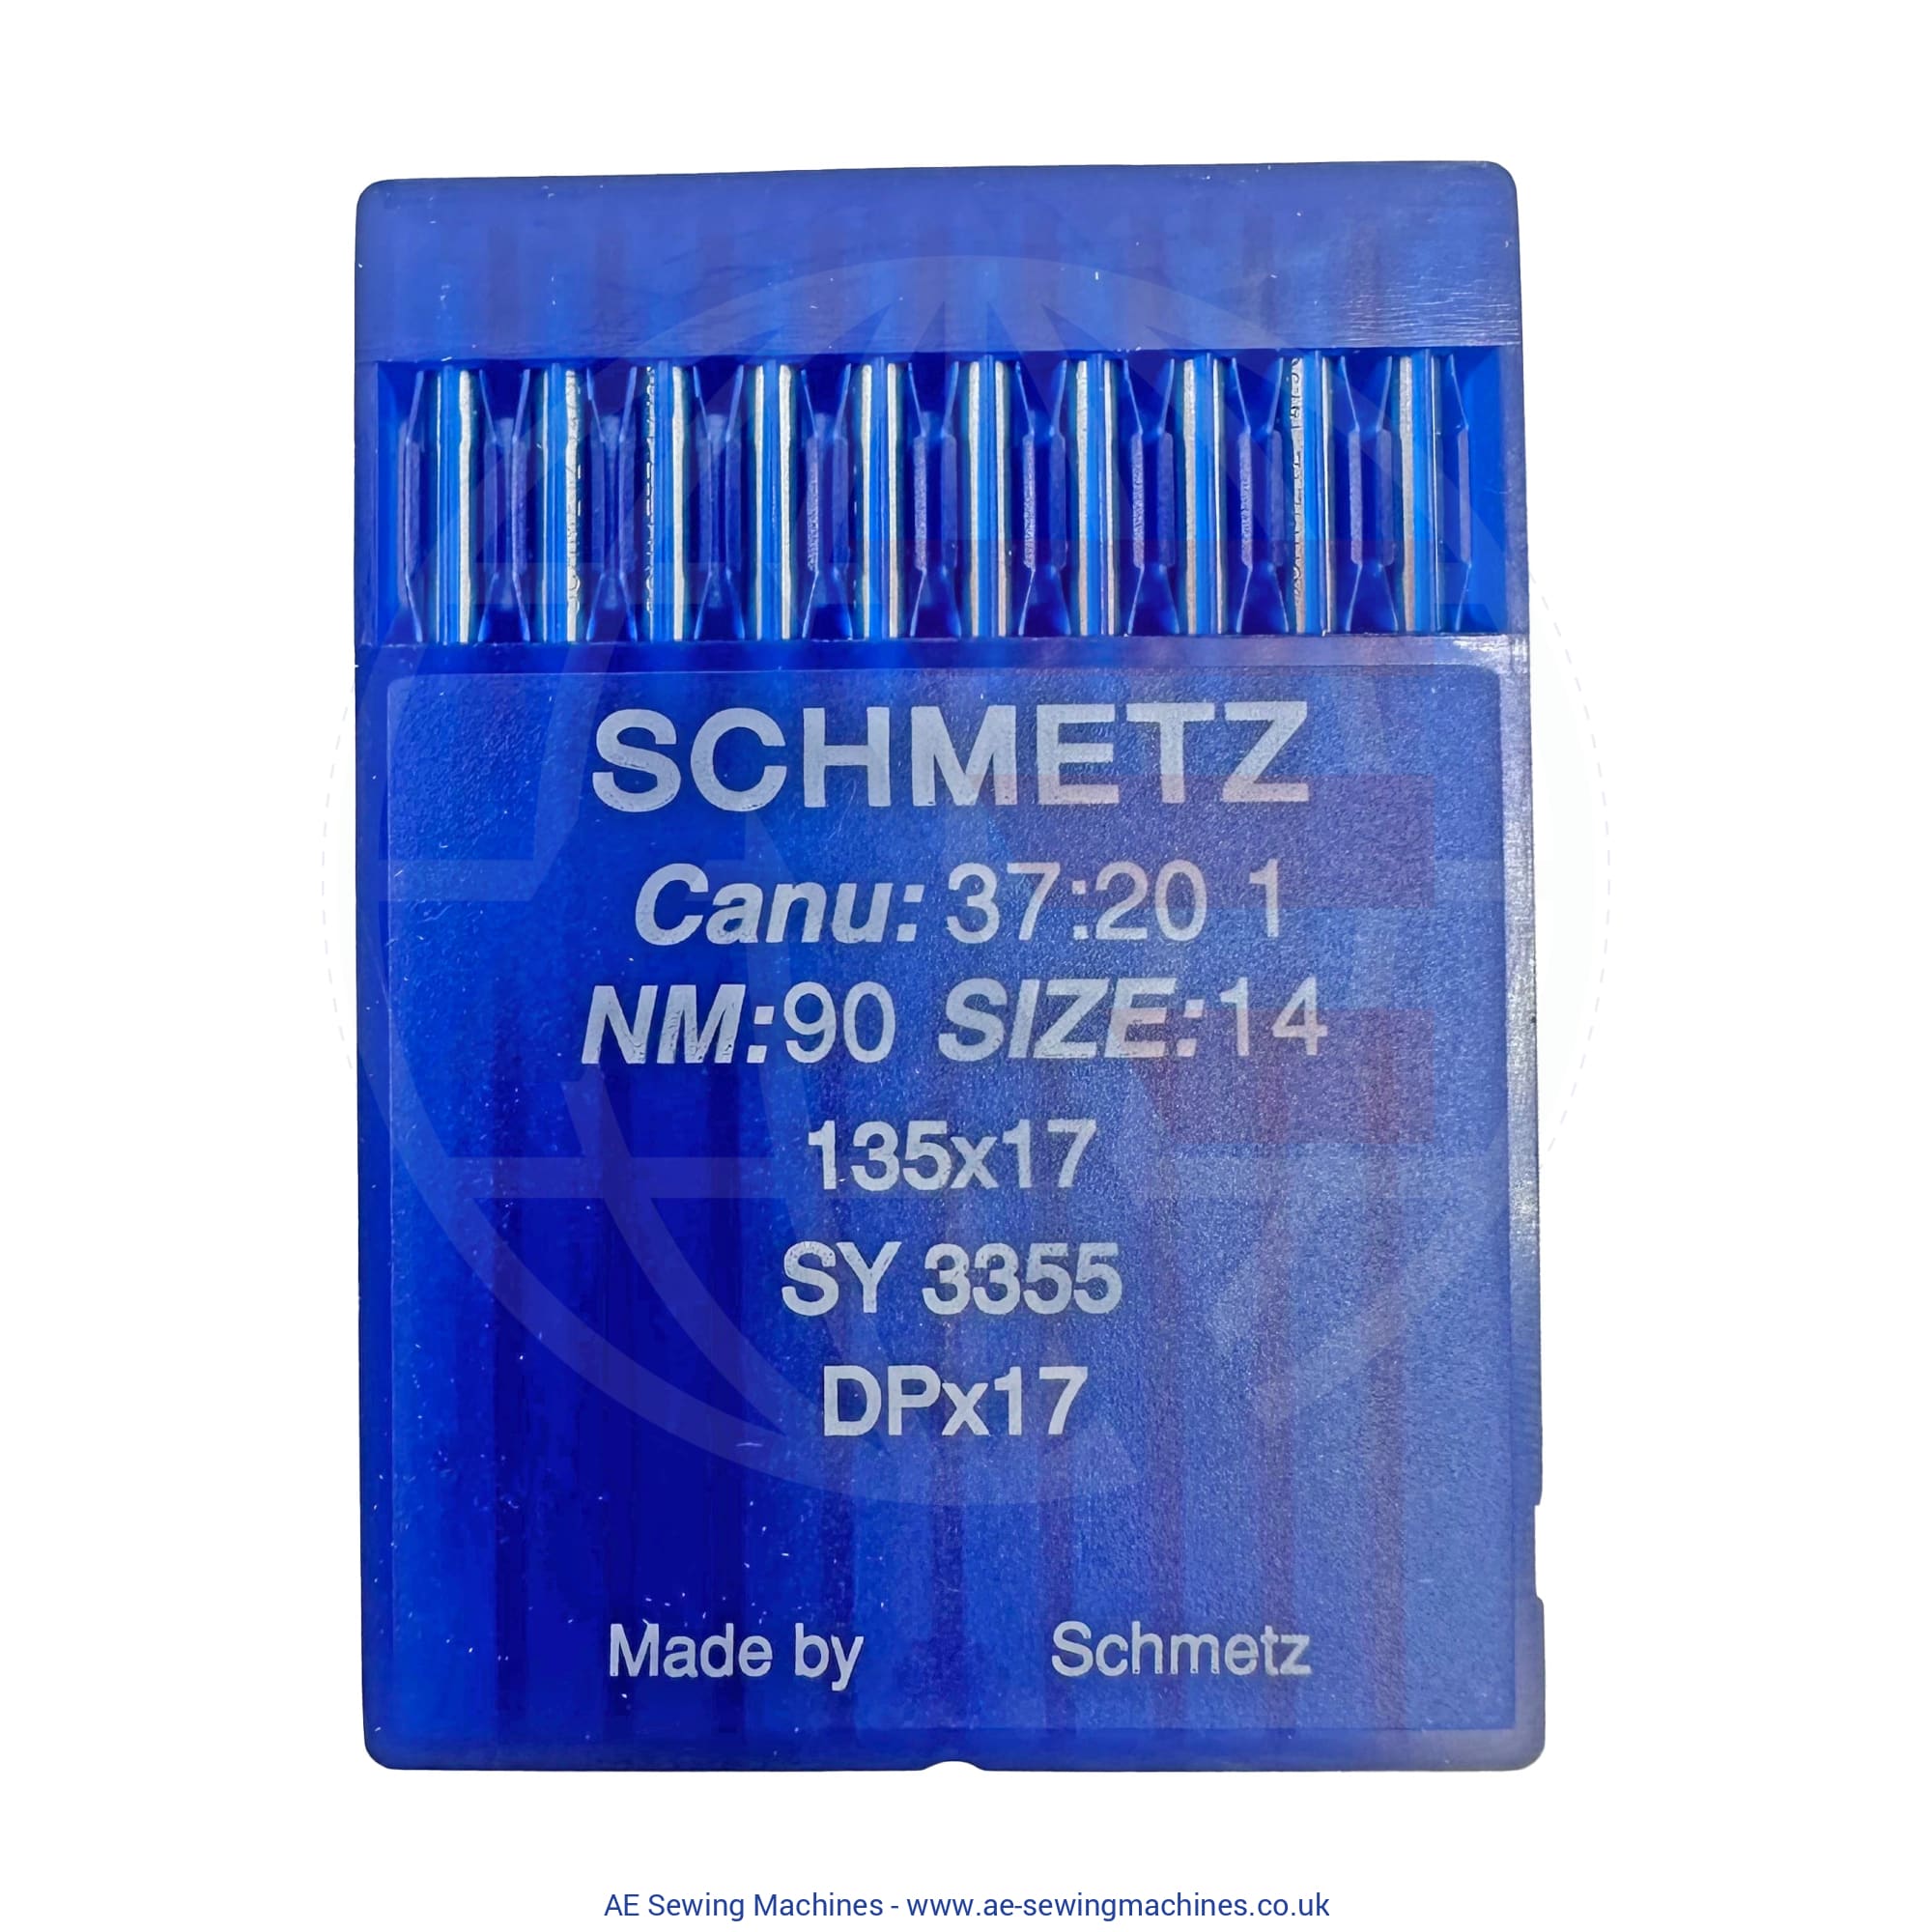 Schmetz 135X17 Regular Point Needles 90 Sewing Machine